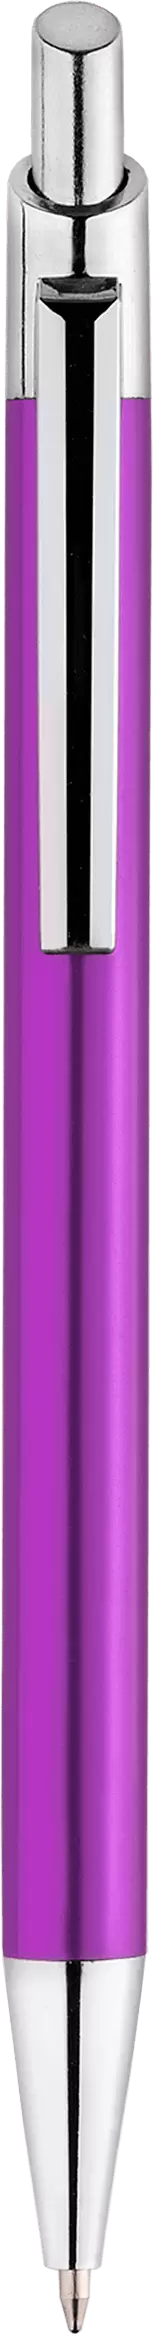 Ручка TIKKO NEW Фиолетовая 2105-11